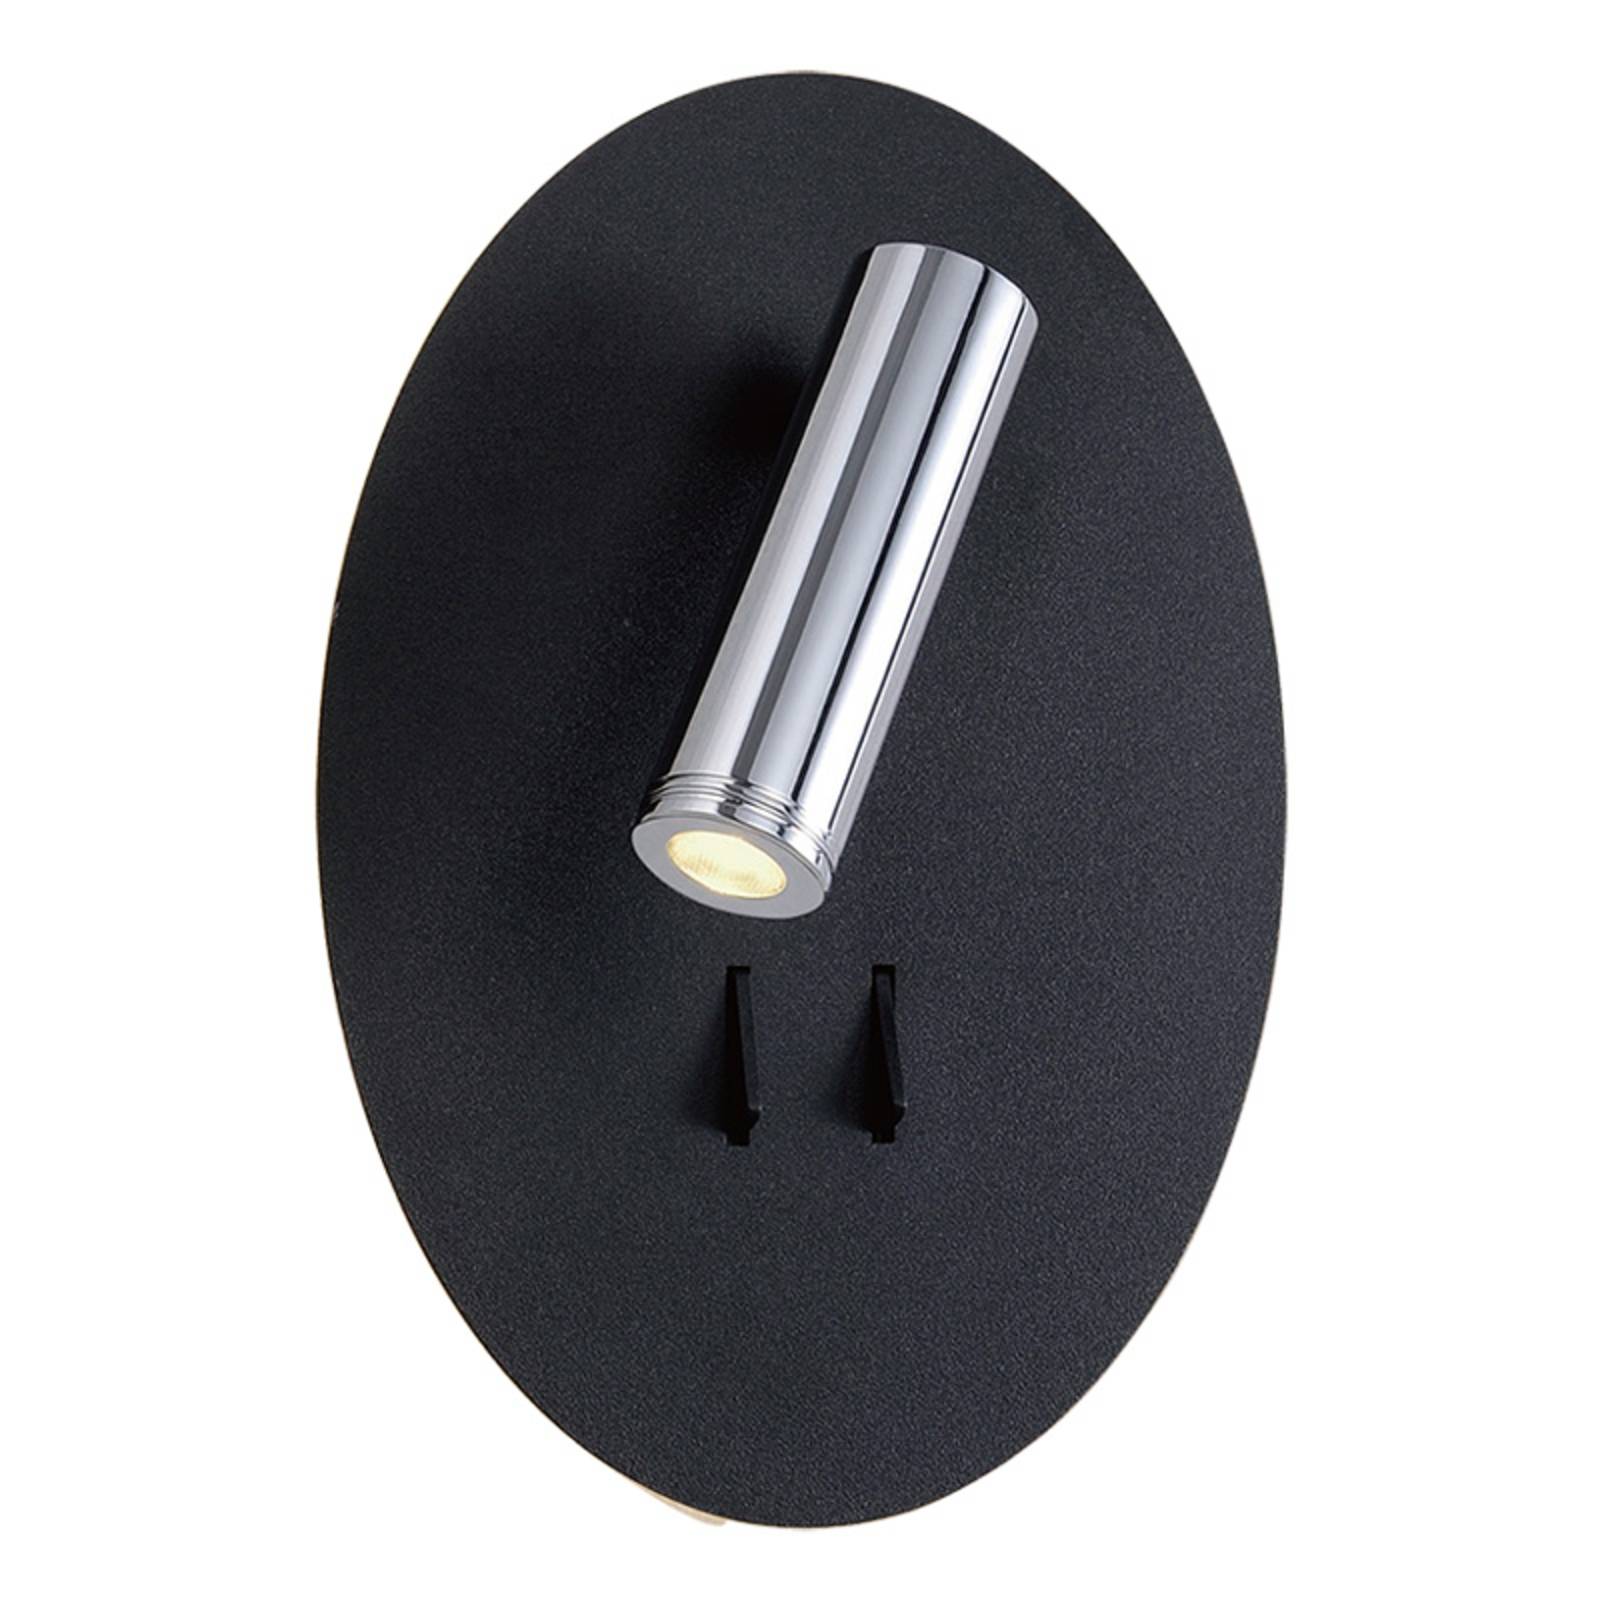 Lucande Kimo applique LED ovale noire